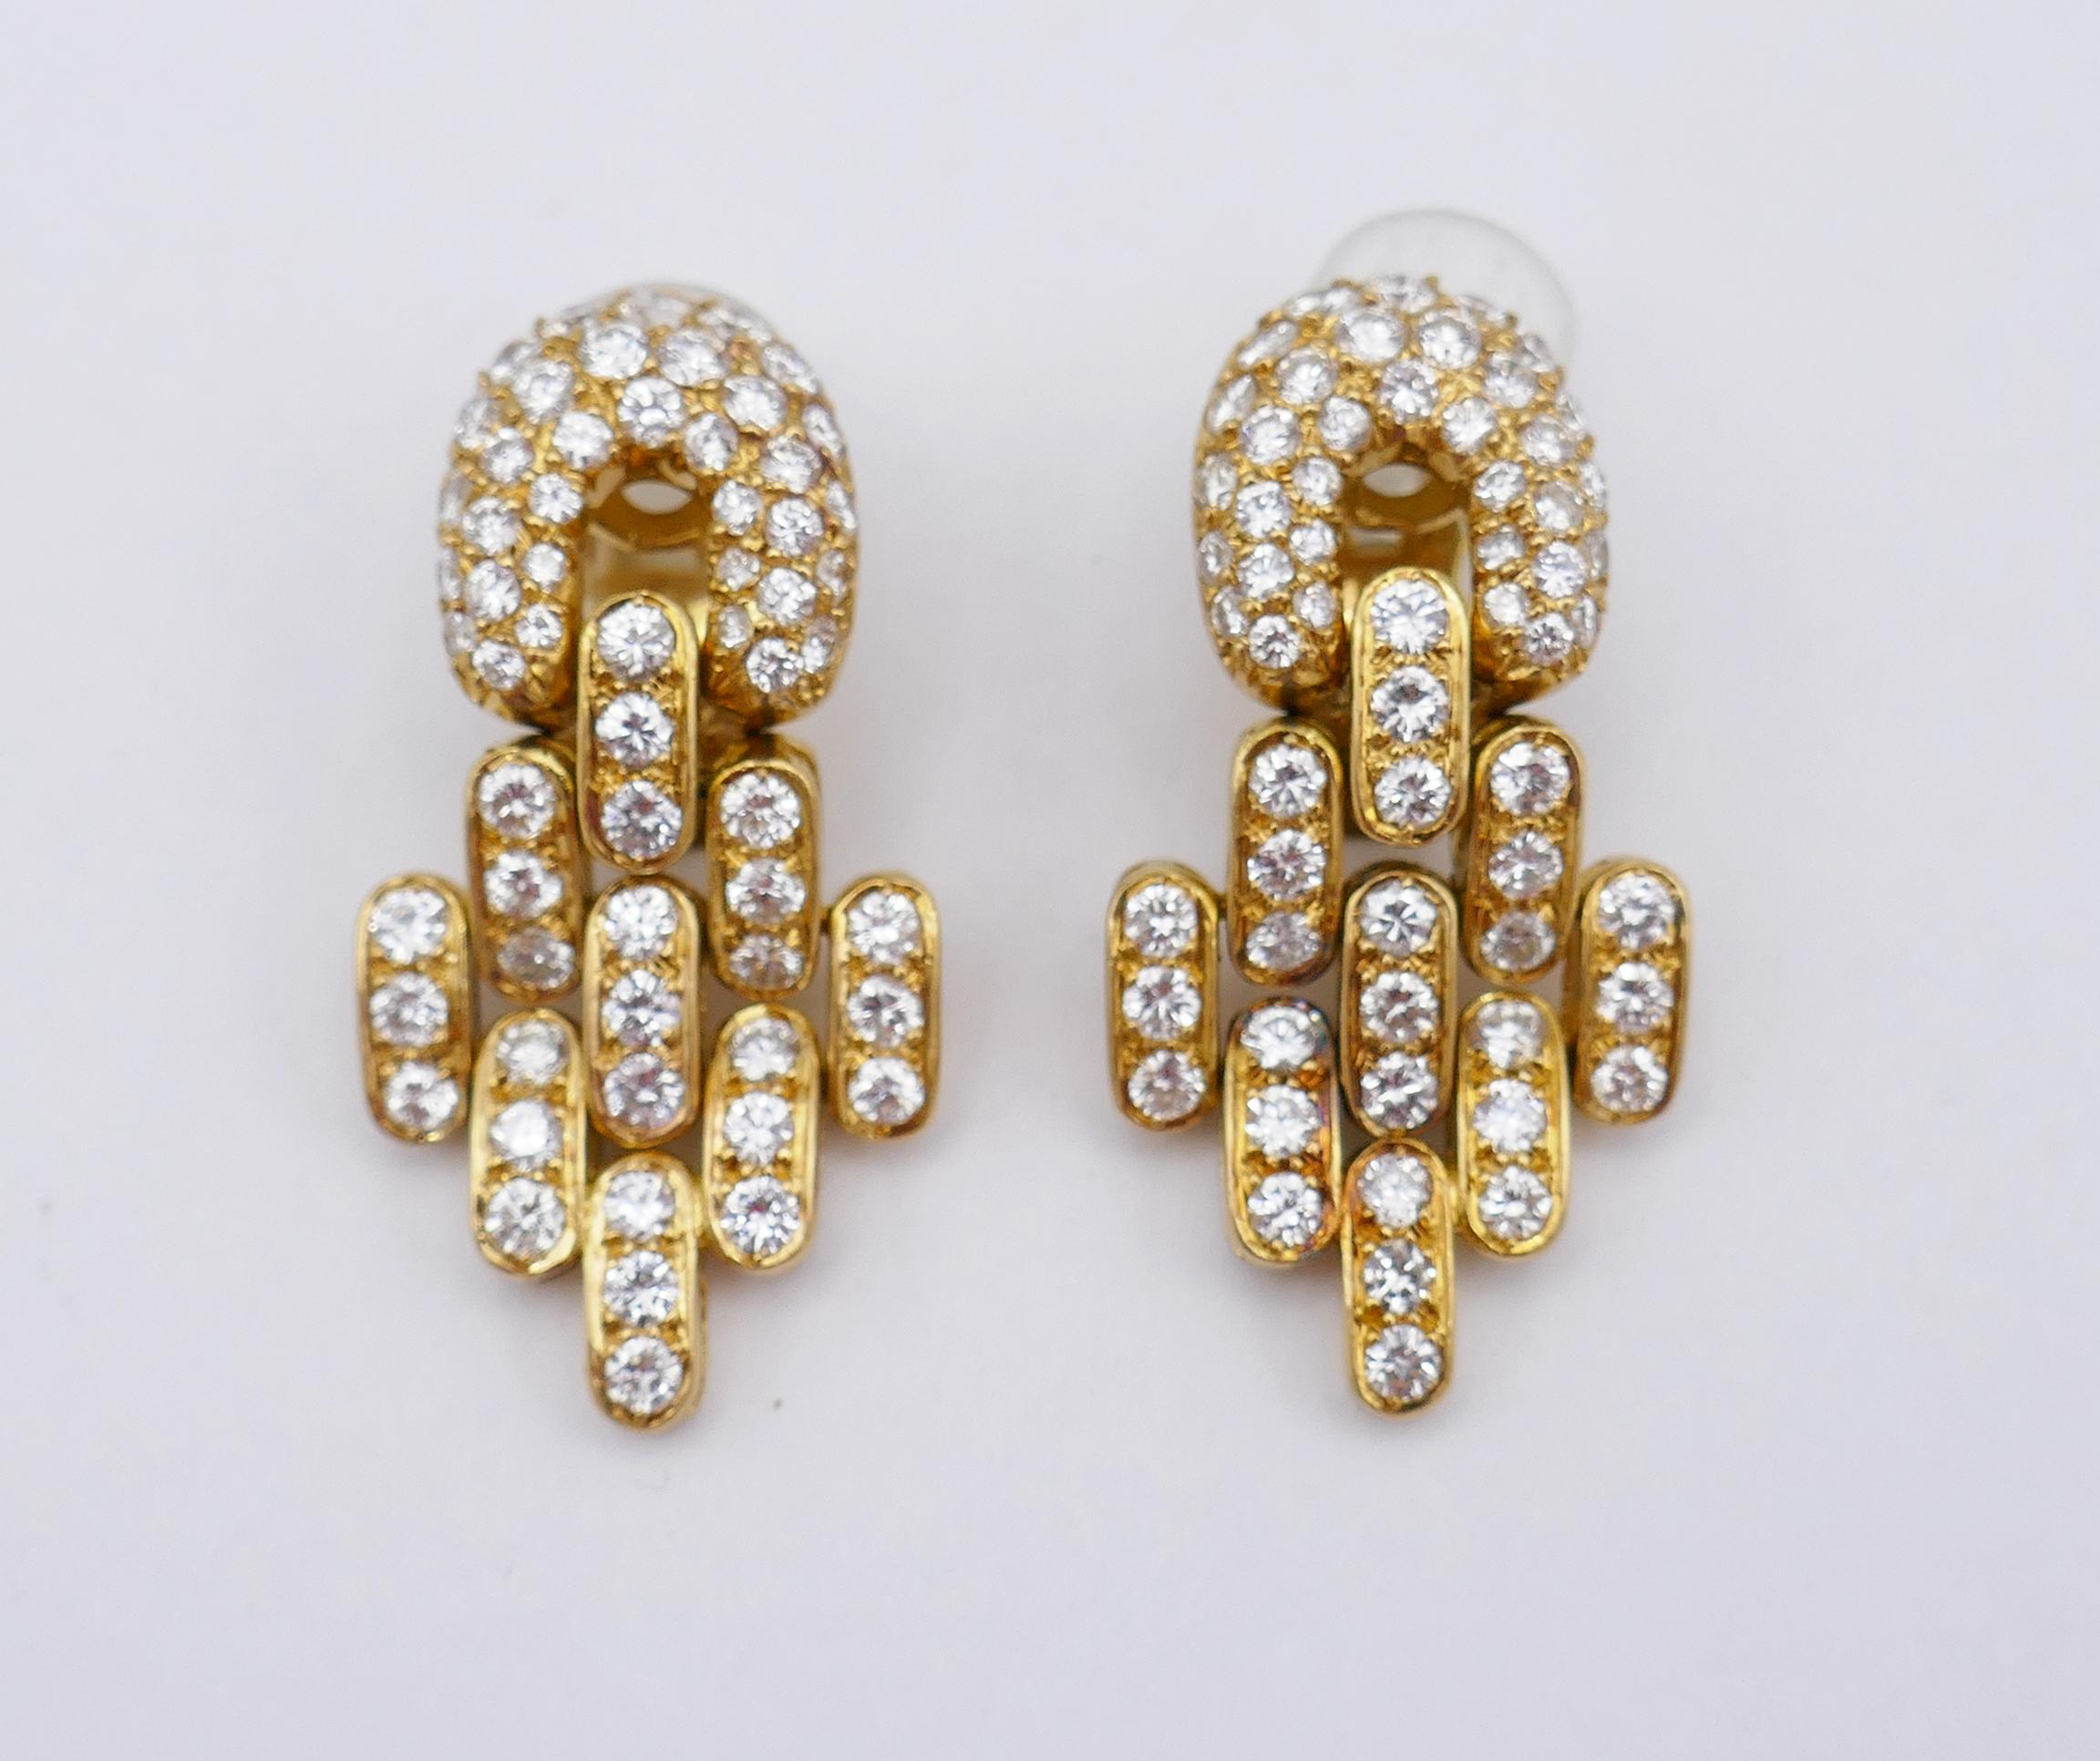 	Une magnifique paire de boucles d'oreilles vintage Boucheron en or jaune 18 carats, diamants et onyx noir.
	Ces boucles d'oreilles vintage Boucheron se composent d'un disque ovale en onyx noir et d'une partie pendante en or et diamants. Le disque